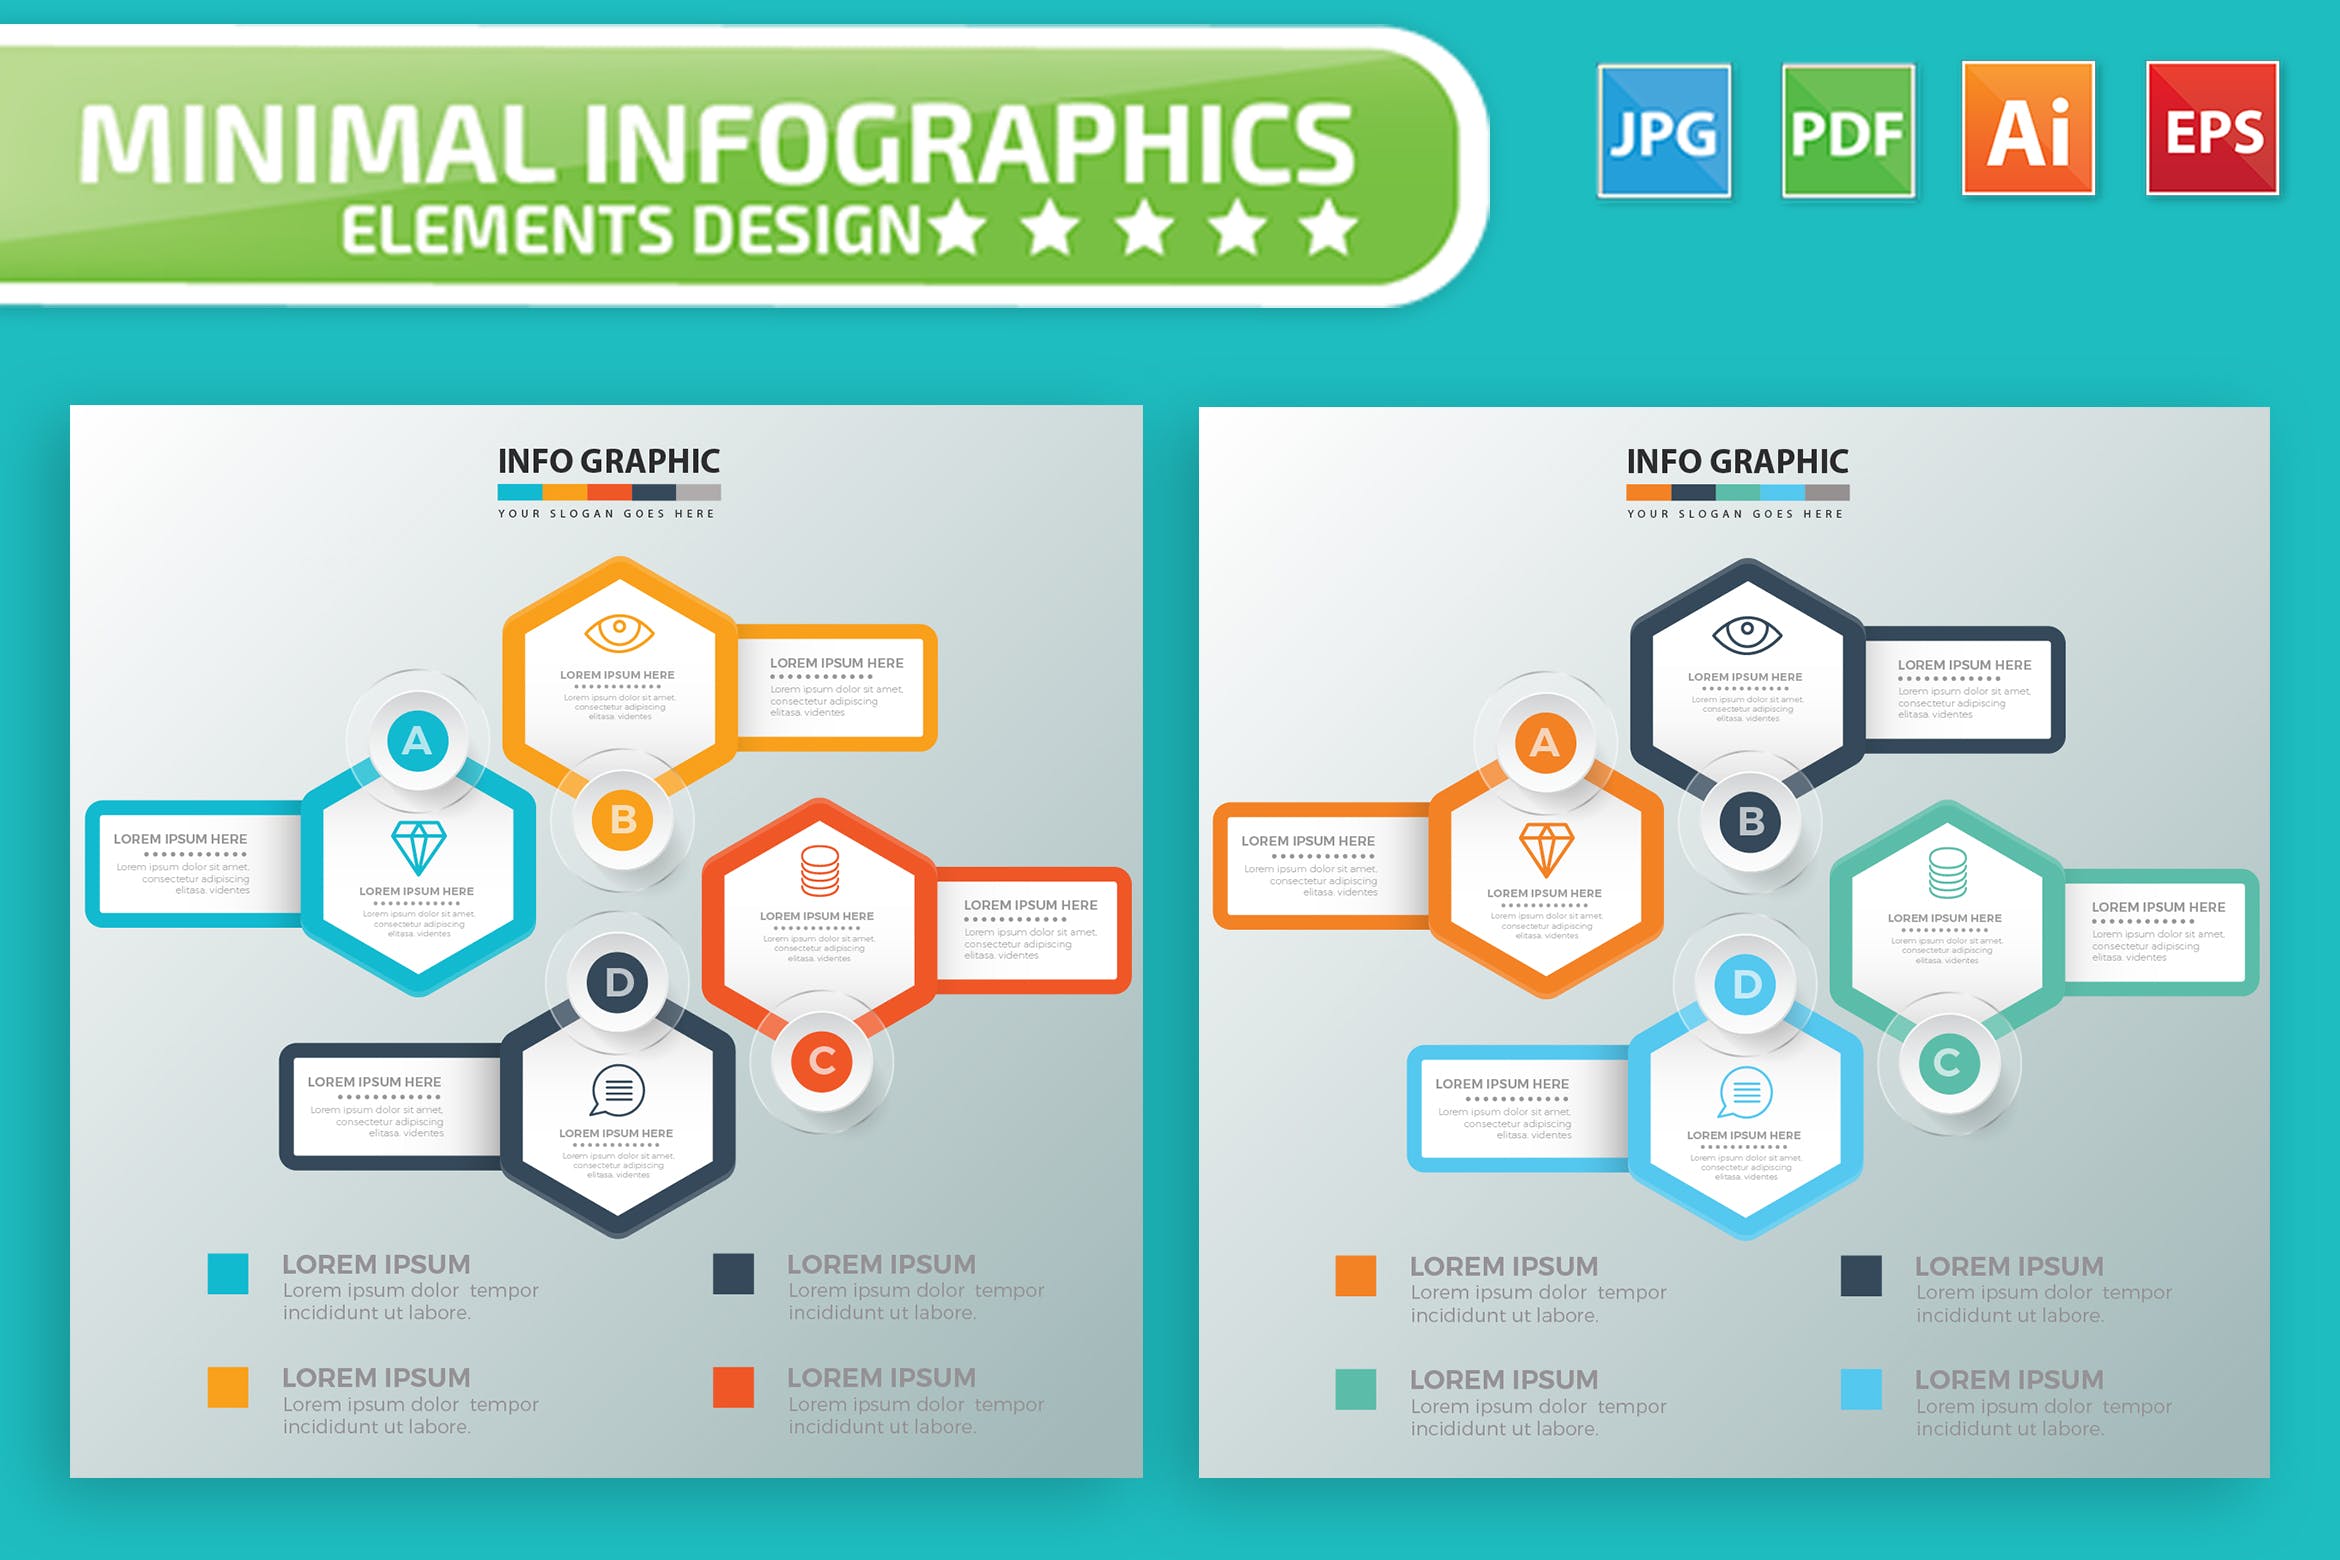 要点说明/重要特征信息图表矢量图形第一素材精选素材v7 Infographic Elements Design插图